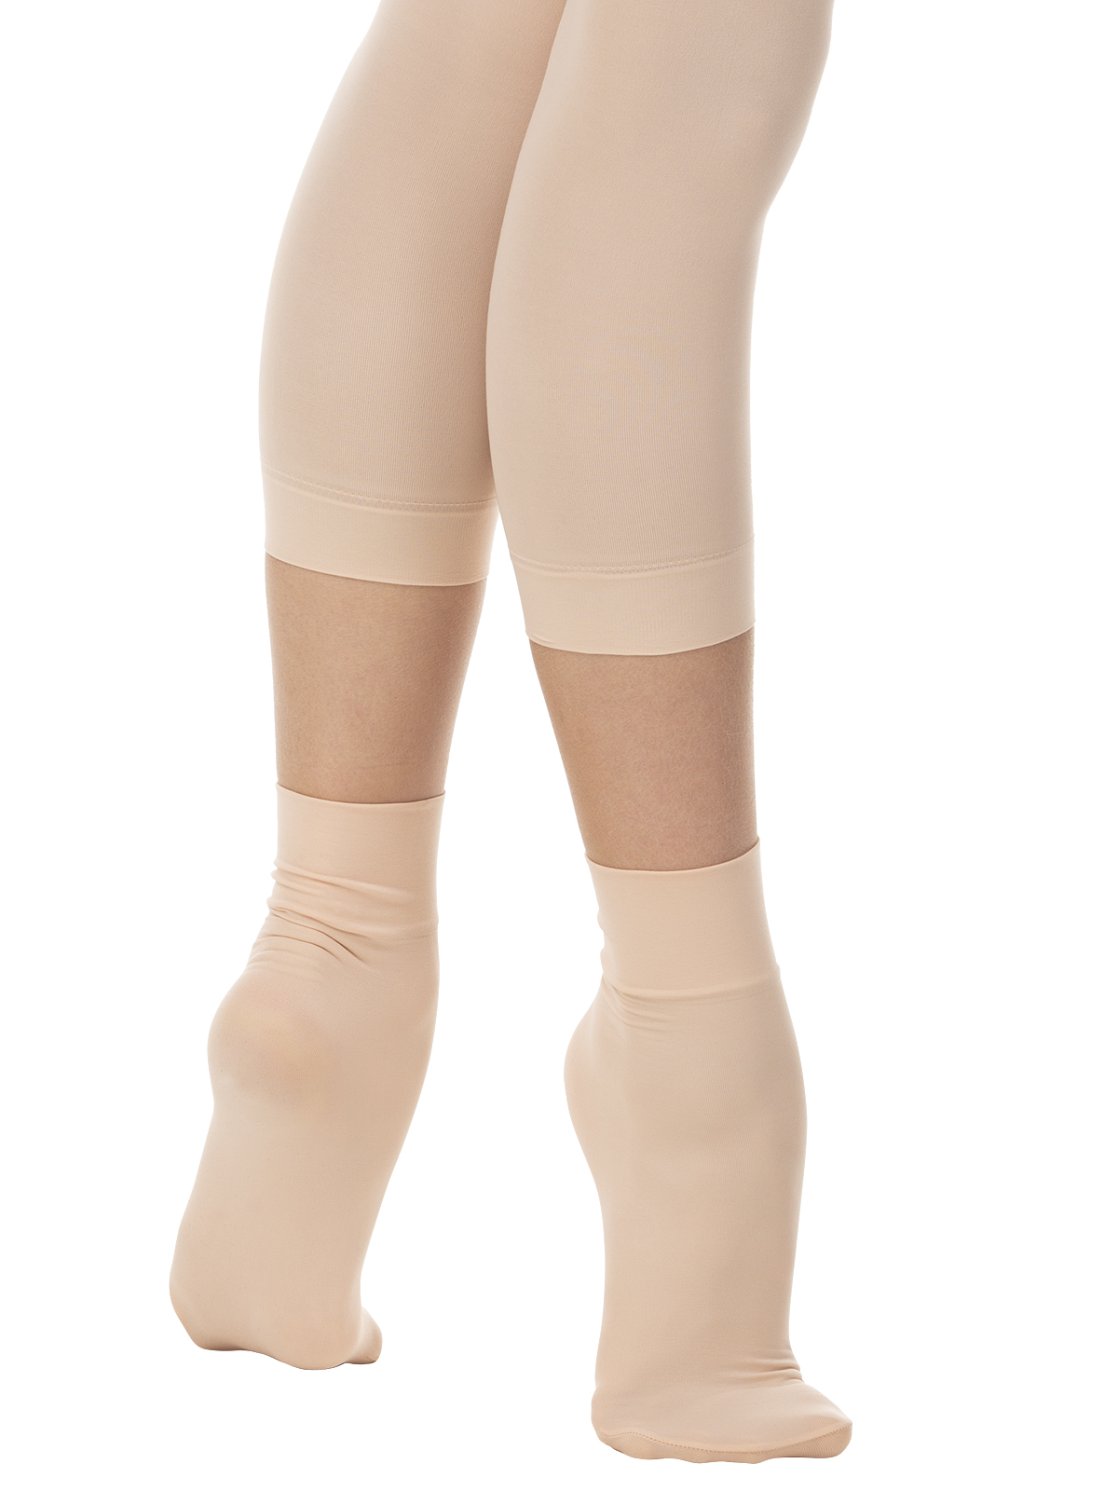 Носки балетные телесно-розовые матовые профессиональные 60DEN (2 пары)